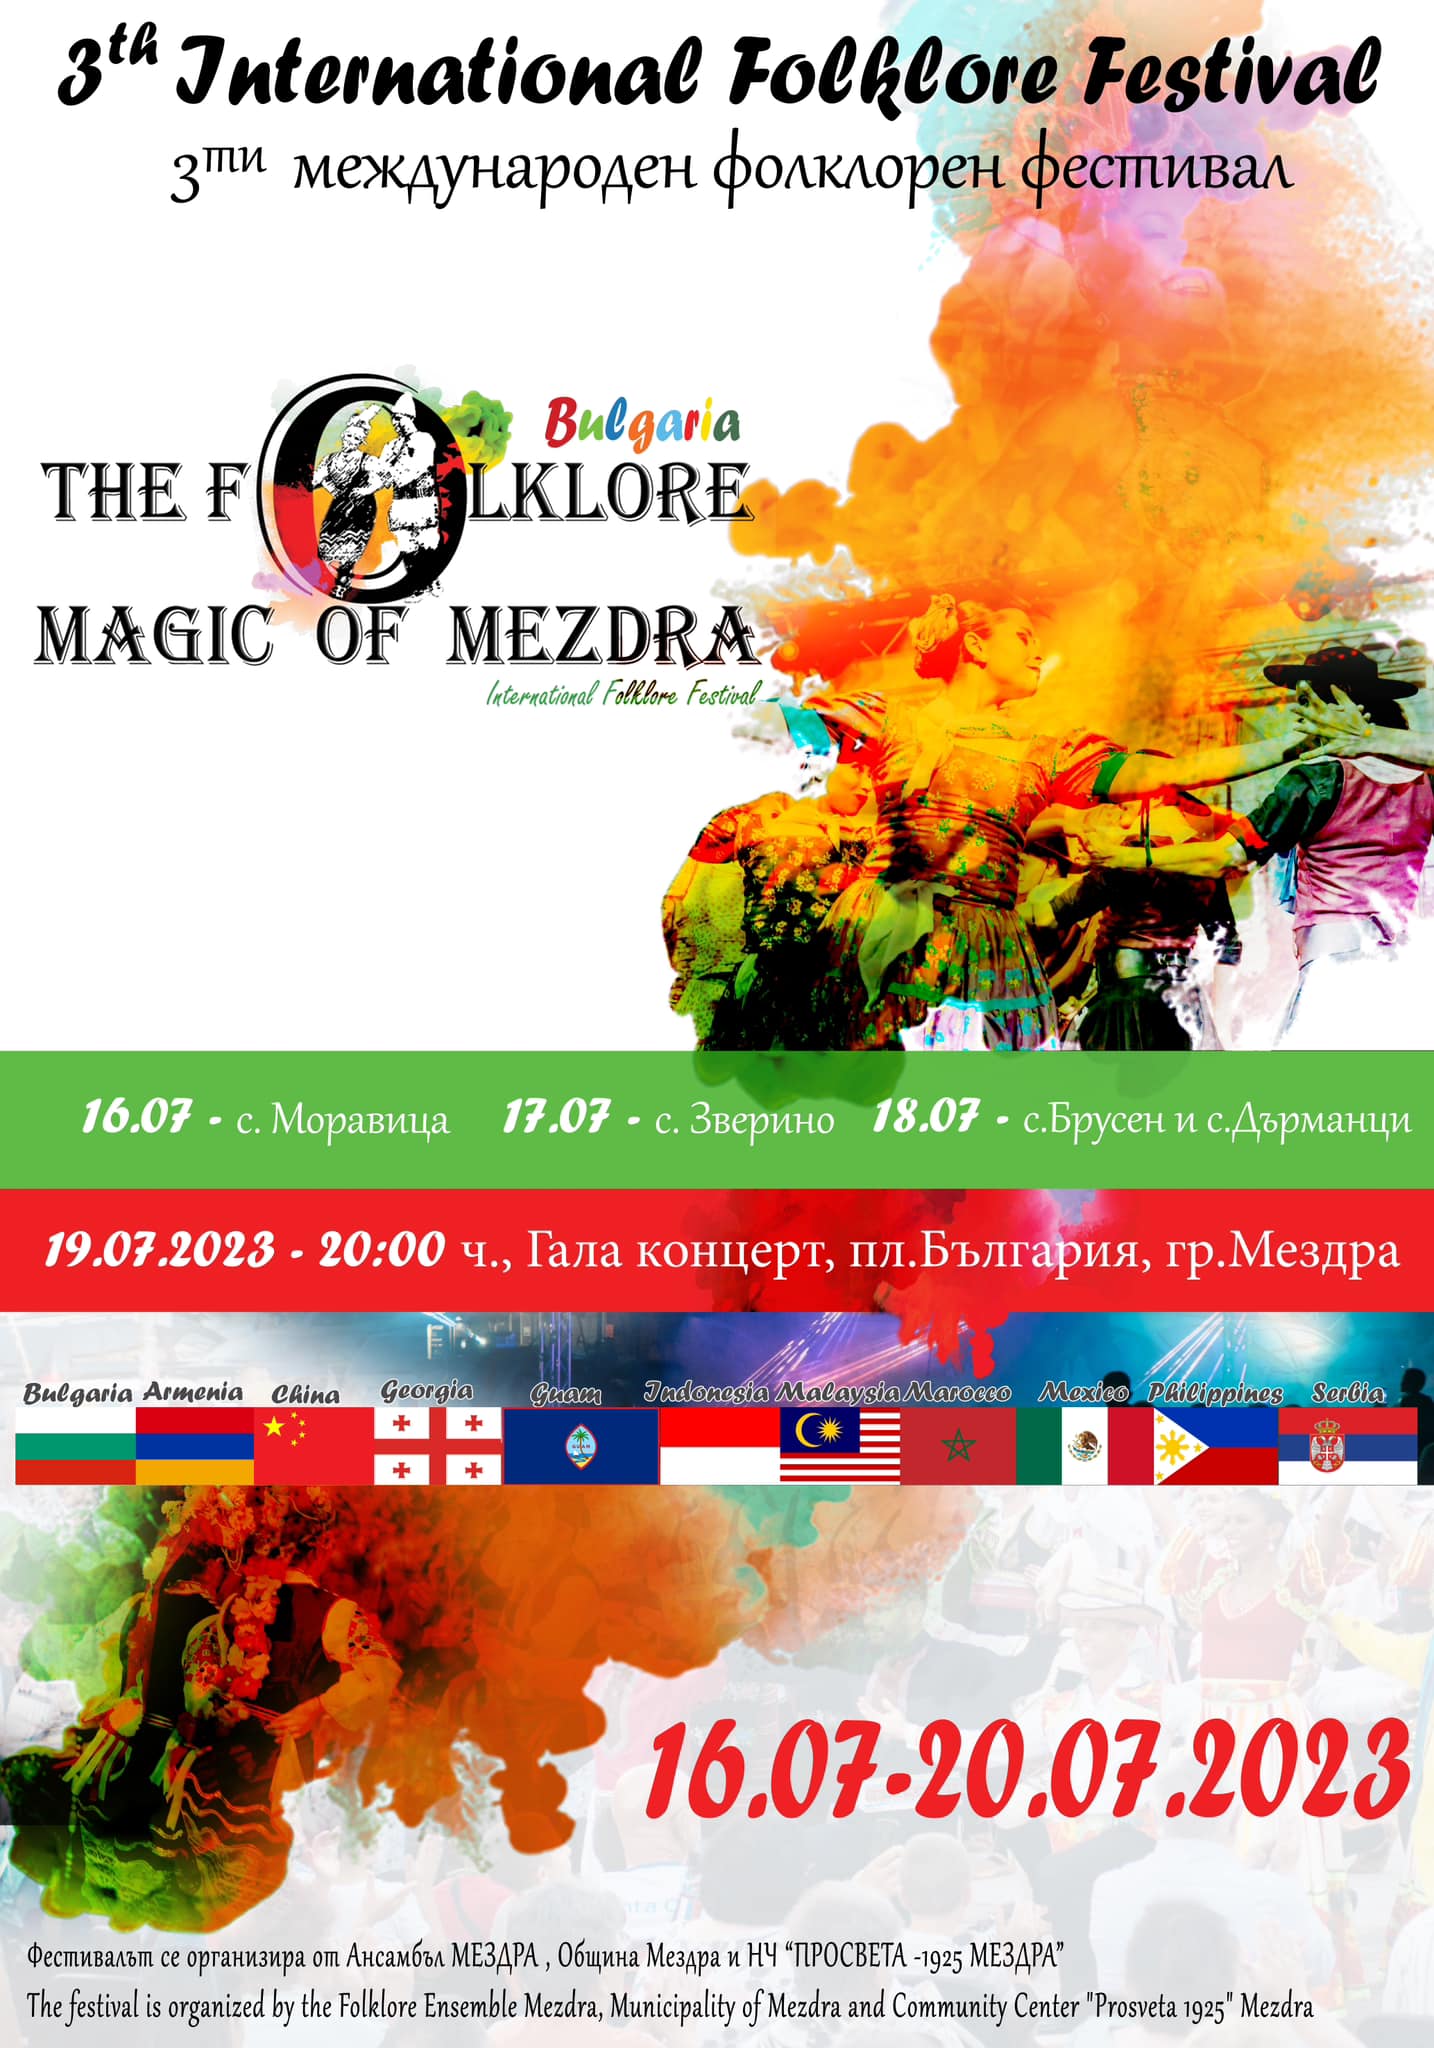 Задава се 3-тия международен фолклорен фестивал „Фолклорната магия на Мездра“